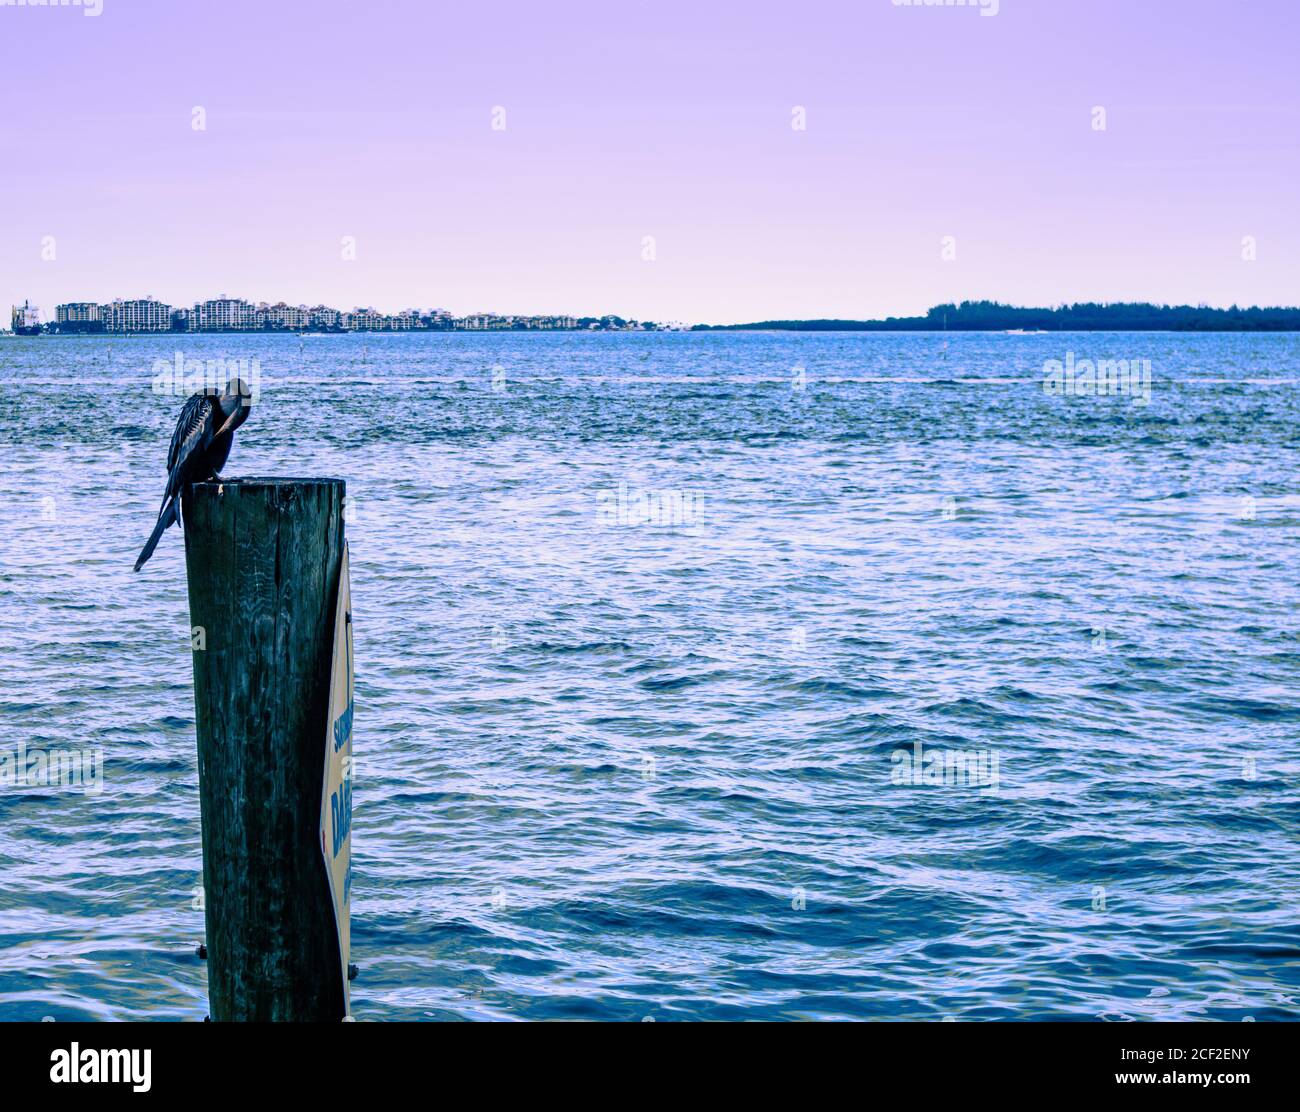 Una garza azul descansa sobre un poste de madera cerca de la costa de Brickell Key, Vista del Canal Sur de Miami con pájaro descansando sobre un poste de madera, Vista de la M Foto de stock